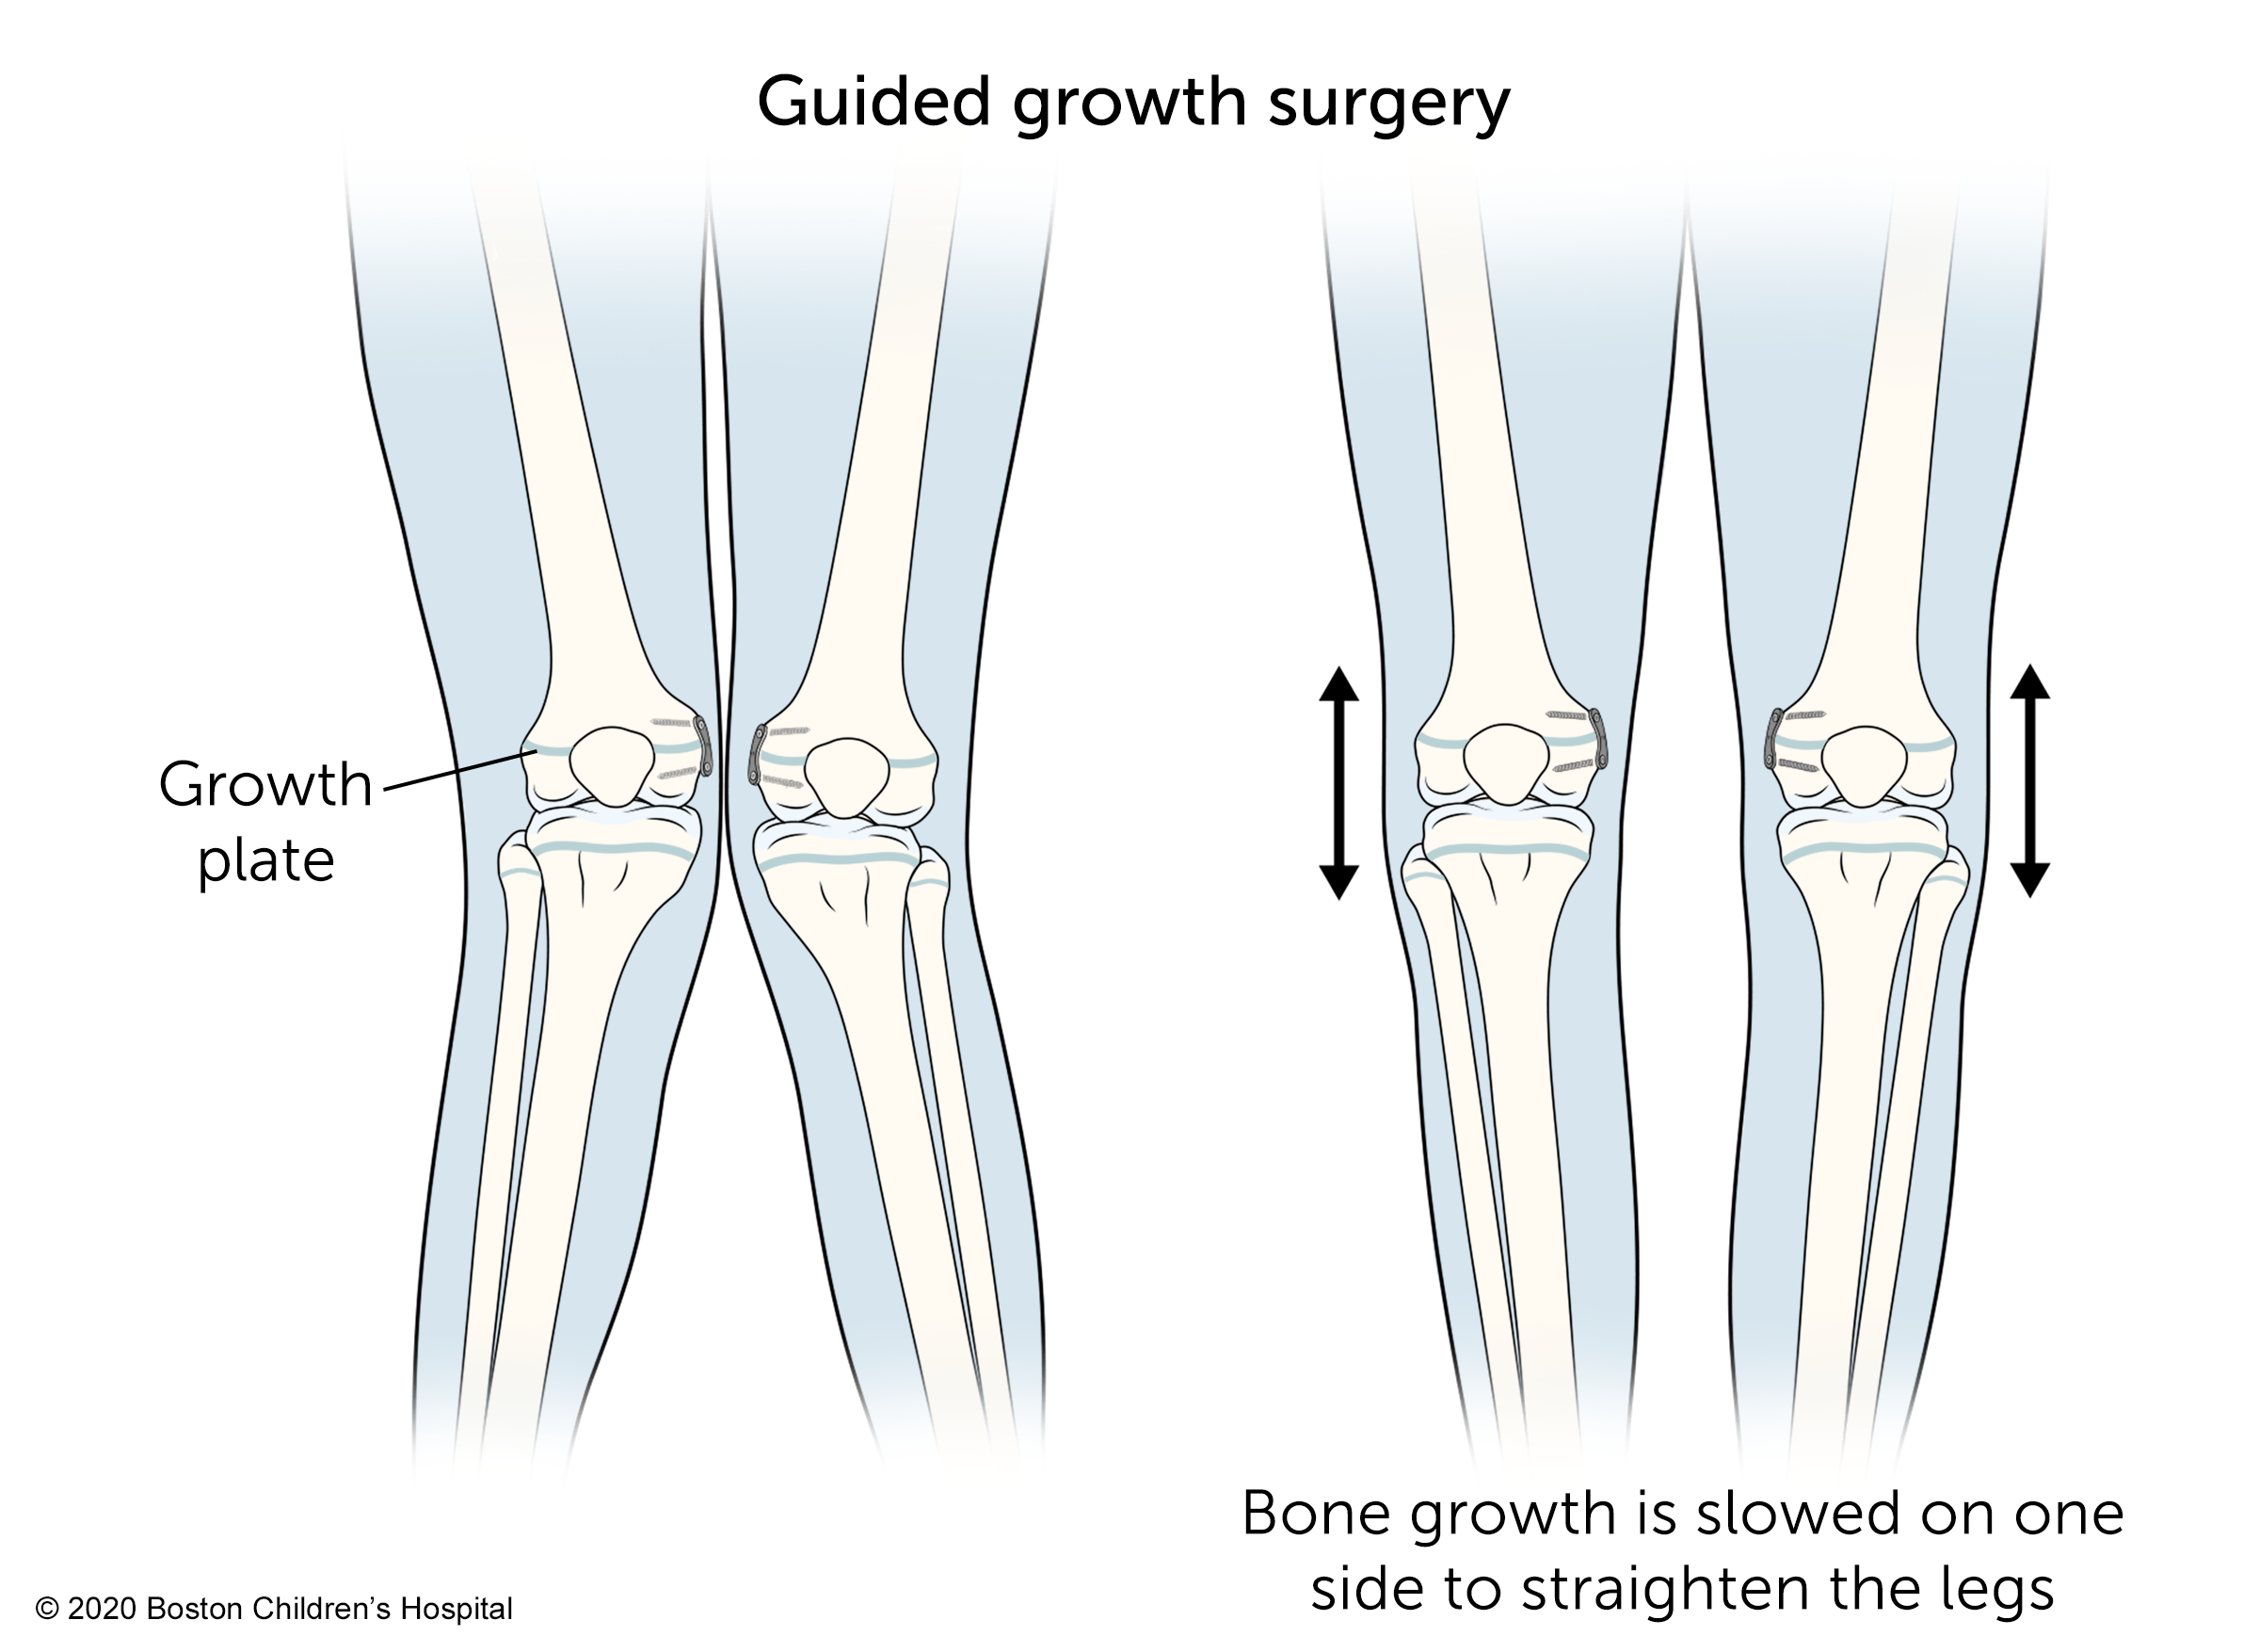 在引导生长手术中，一侧的骨骼生长被减慢以使腿部伸直。